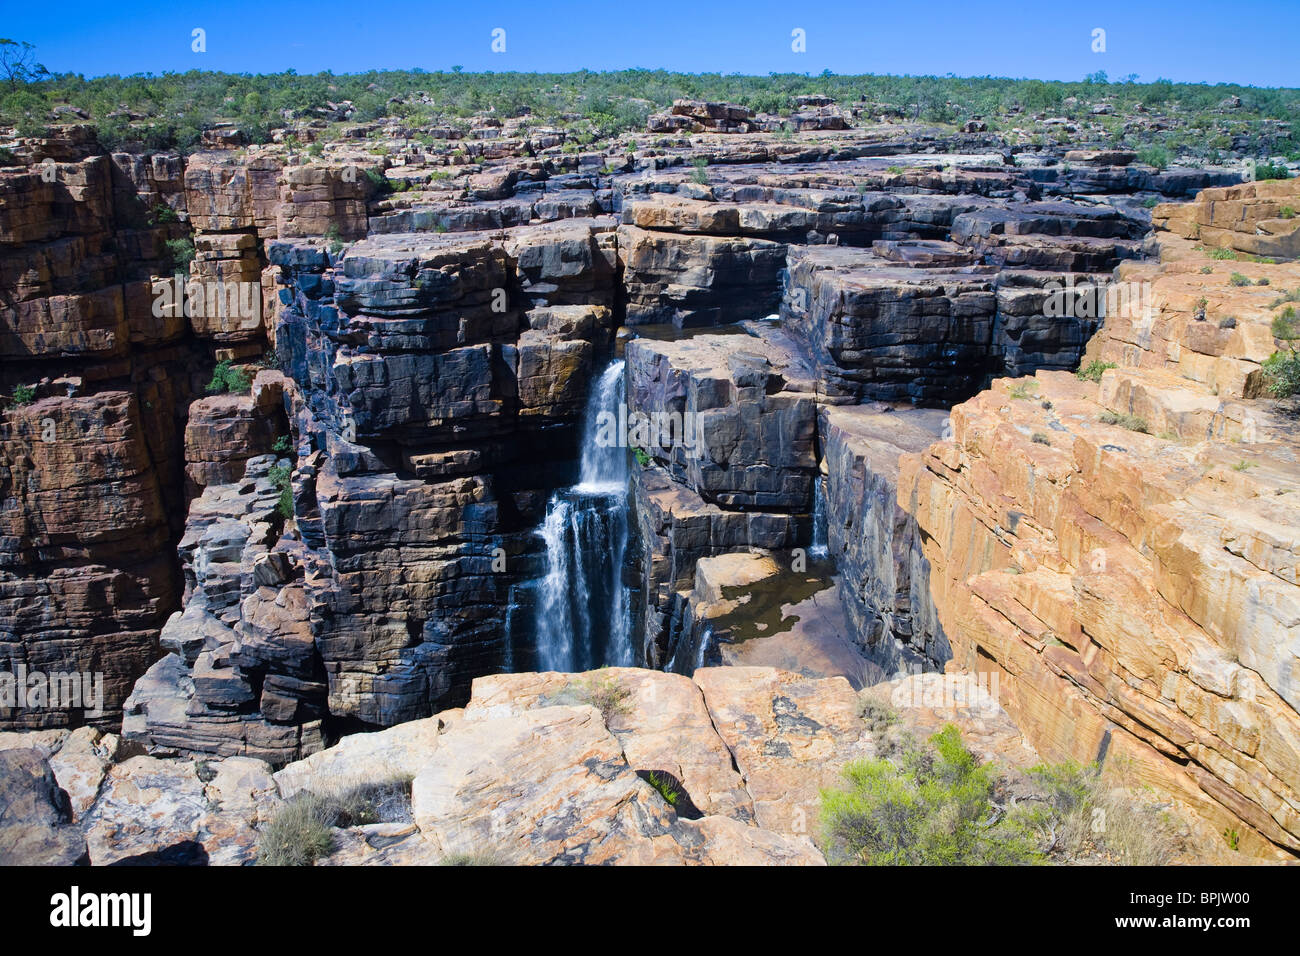 Le roi George Les chutes sont la région de Kimberley, goutte à goutte la plus haute des chutes d'Australie Banque D'Images